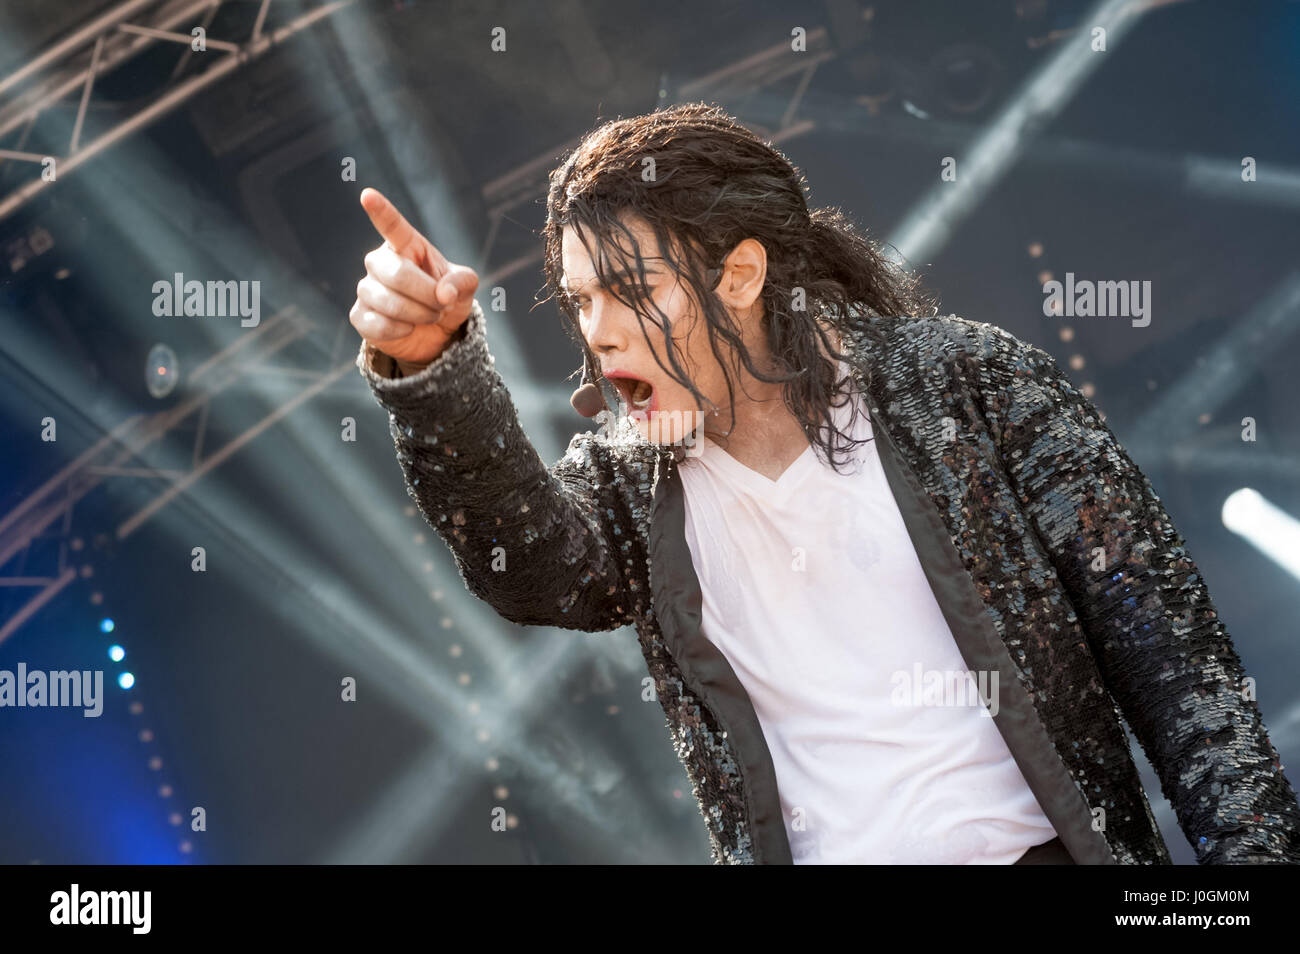 Yateley, UK - 27. Juni 2015: Navi, ein Michael Jackson Tribute Berufskünstler und Imitator Auftritt beim GOTG Festival in Yateley, Großbritannien Stockfoto